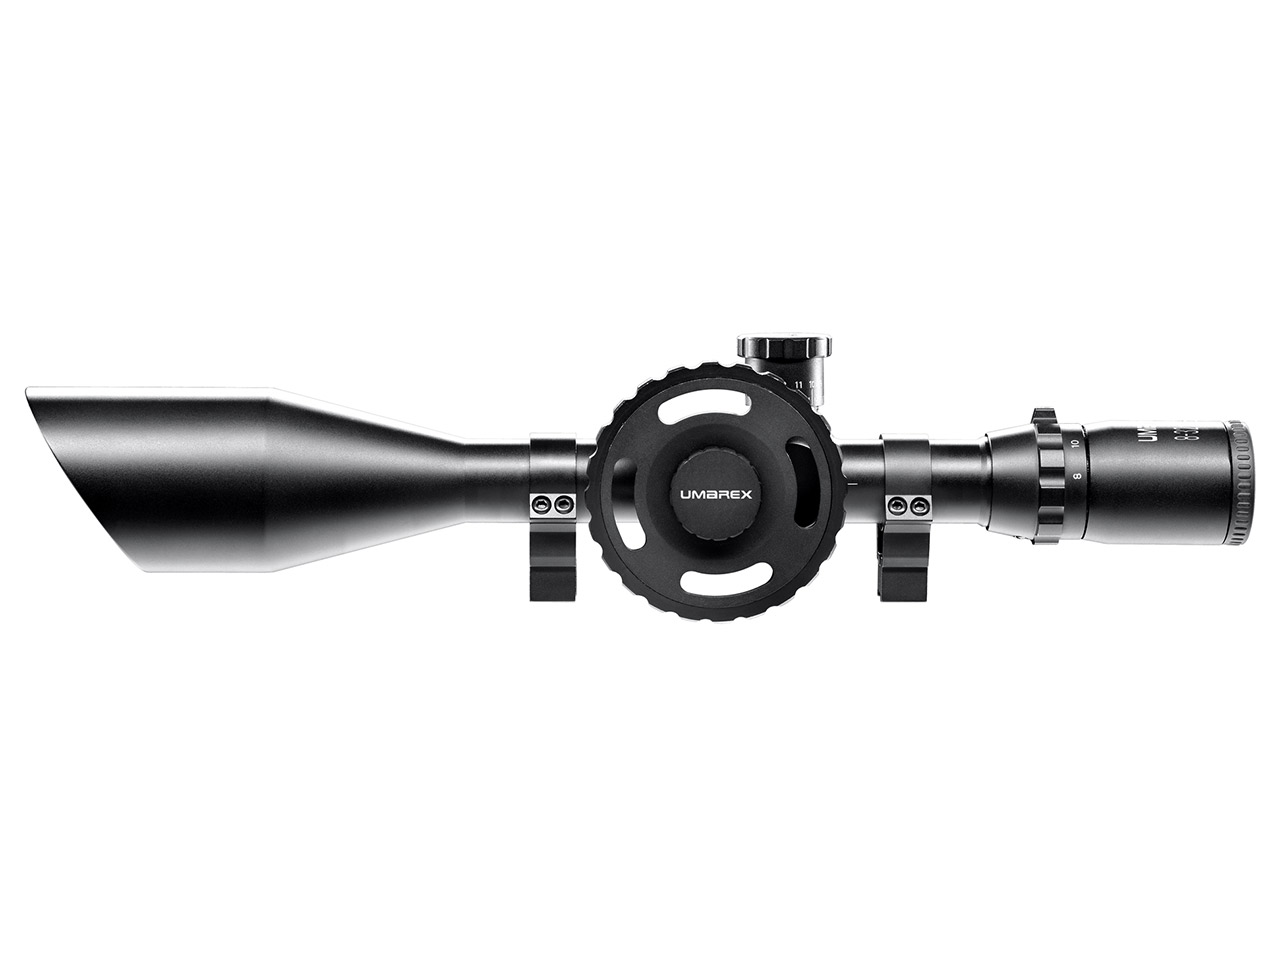 Zielfernrohr Umarex RS 8-32x56 FT TacDot Absehen 30 mm Tubus inklusive Ringmontagen für 11 mm Prismenschiene